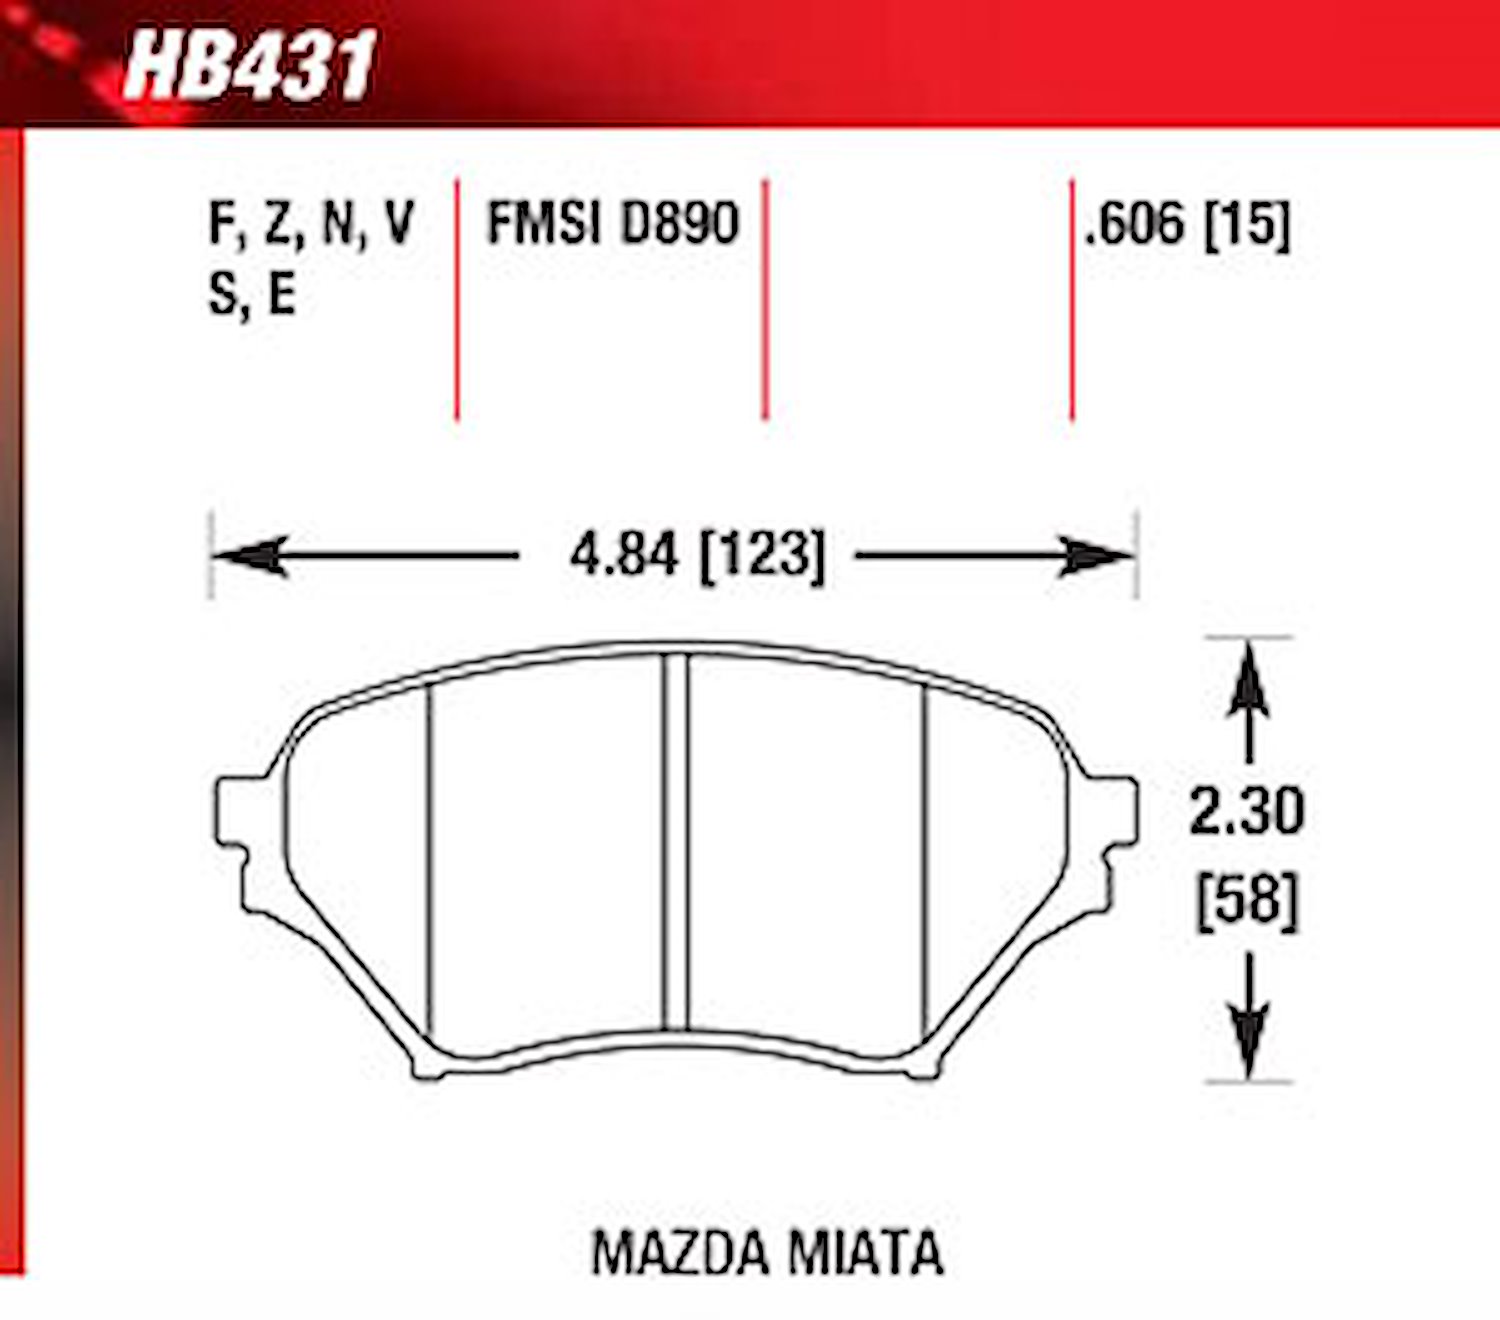 Blue 9012 Disk Brake Pads Mazda Miata